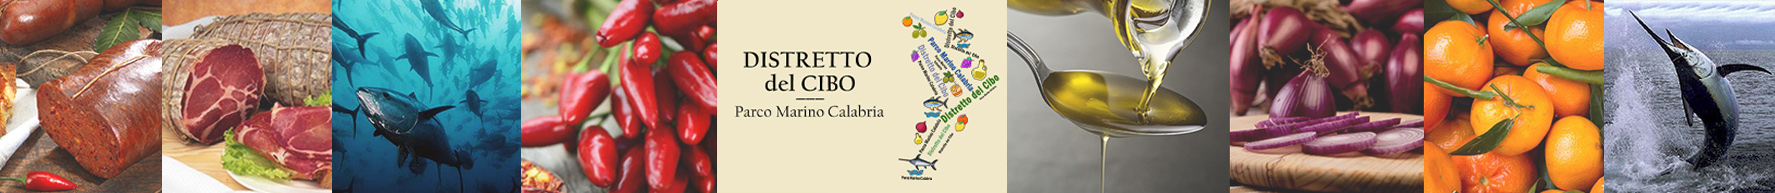 Distretto_del_Cibo_EPMC_Parco_Marino_Calabria.jpg